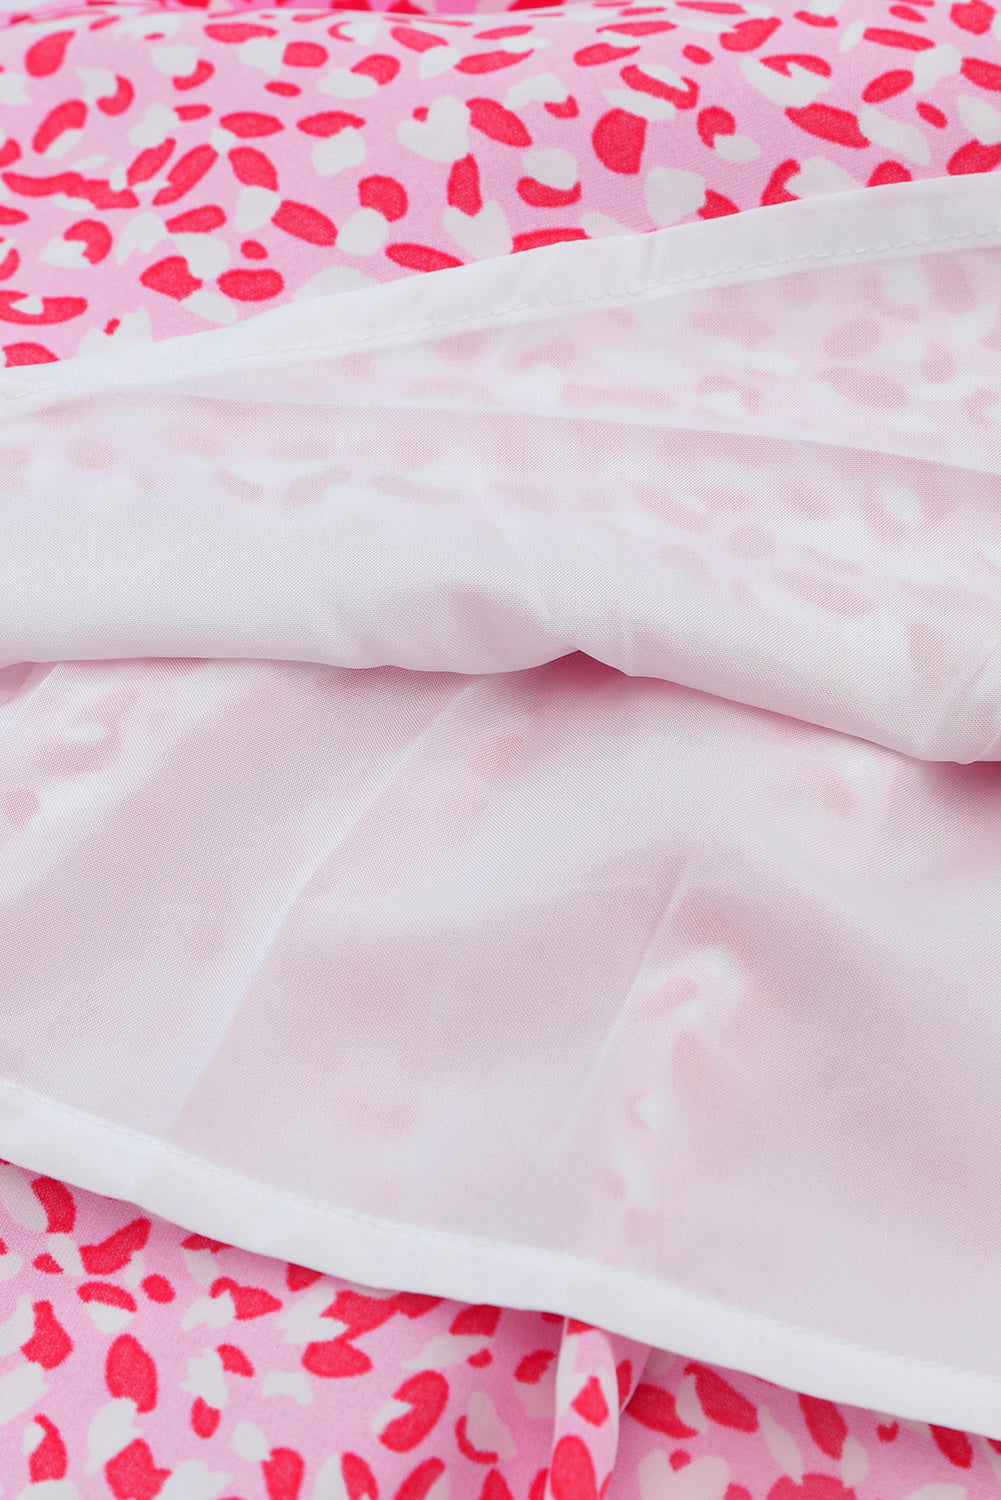 Ružičasta mini haljina bez rukava s leopard printom i vezicom oko struka